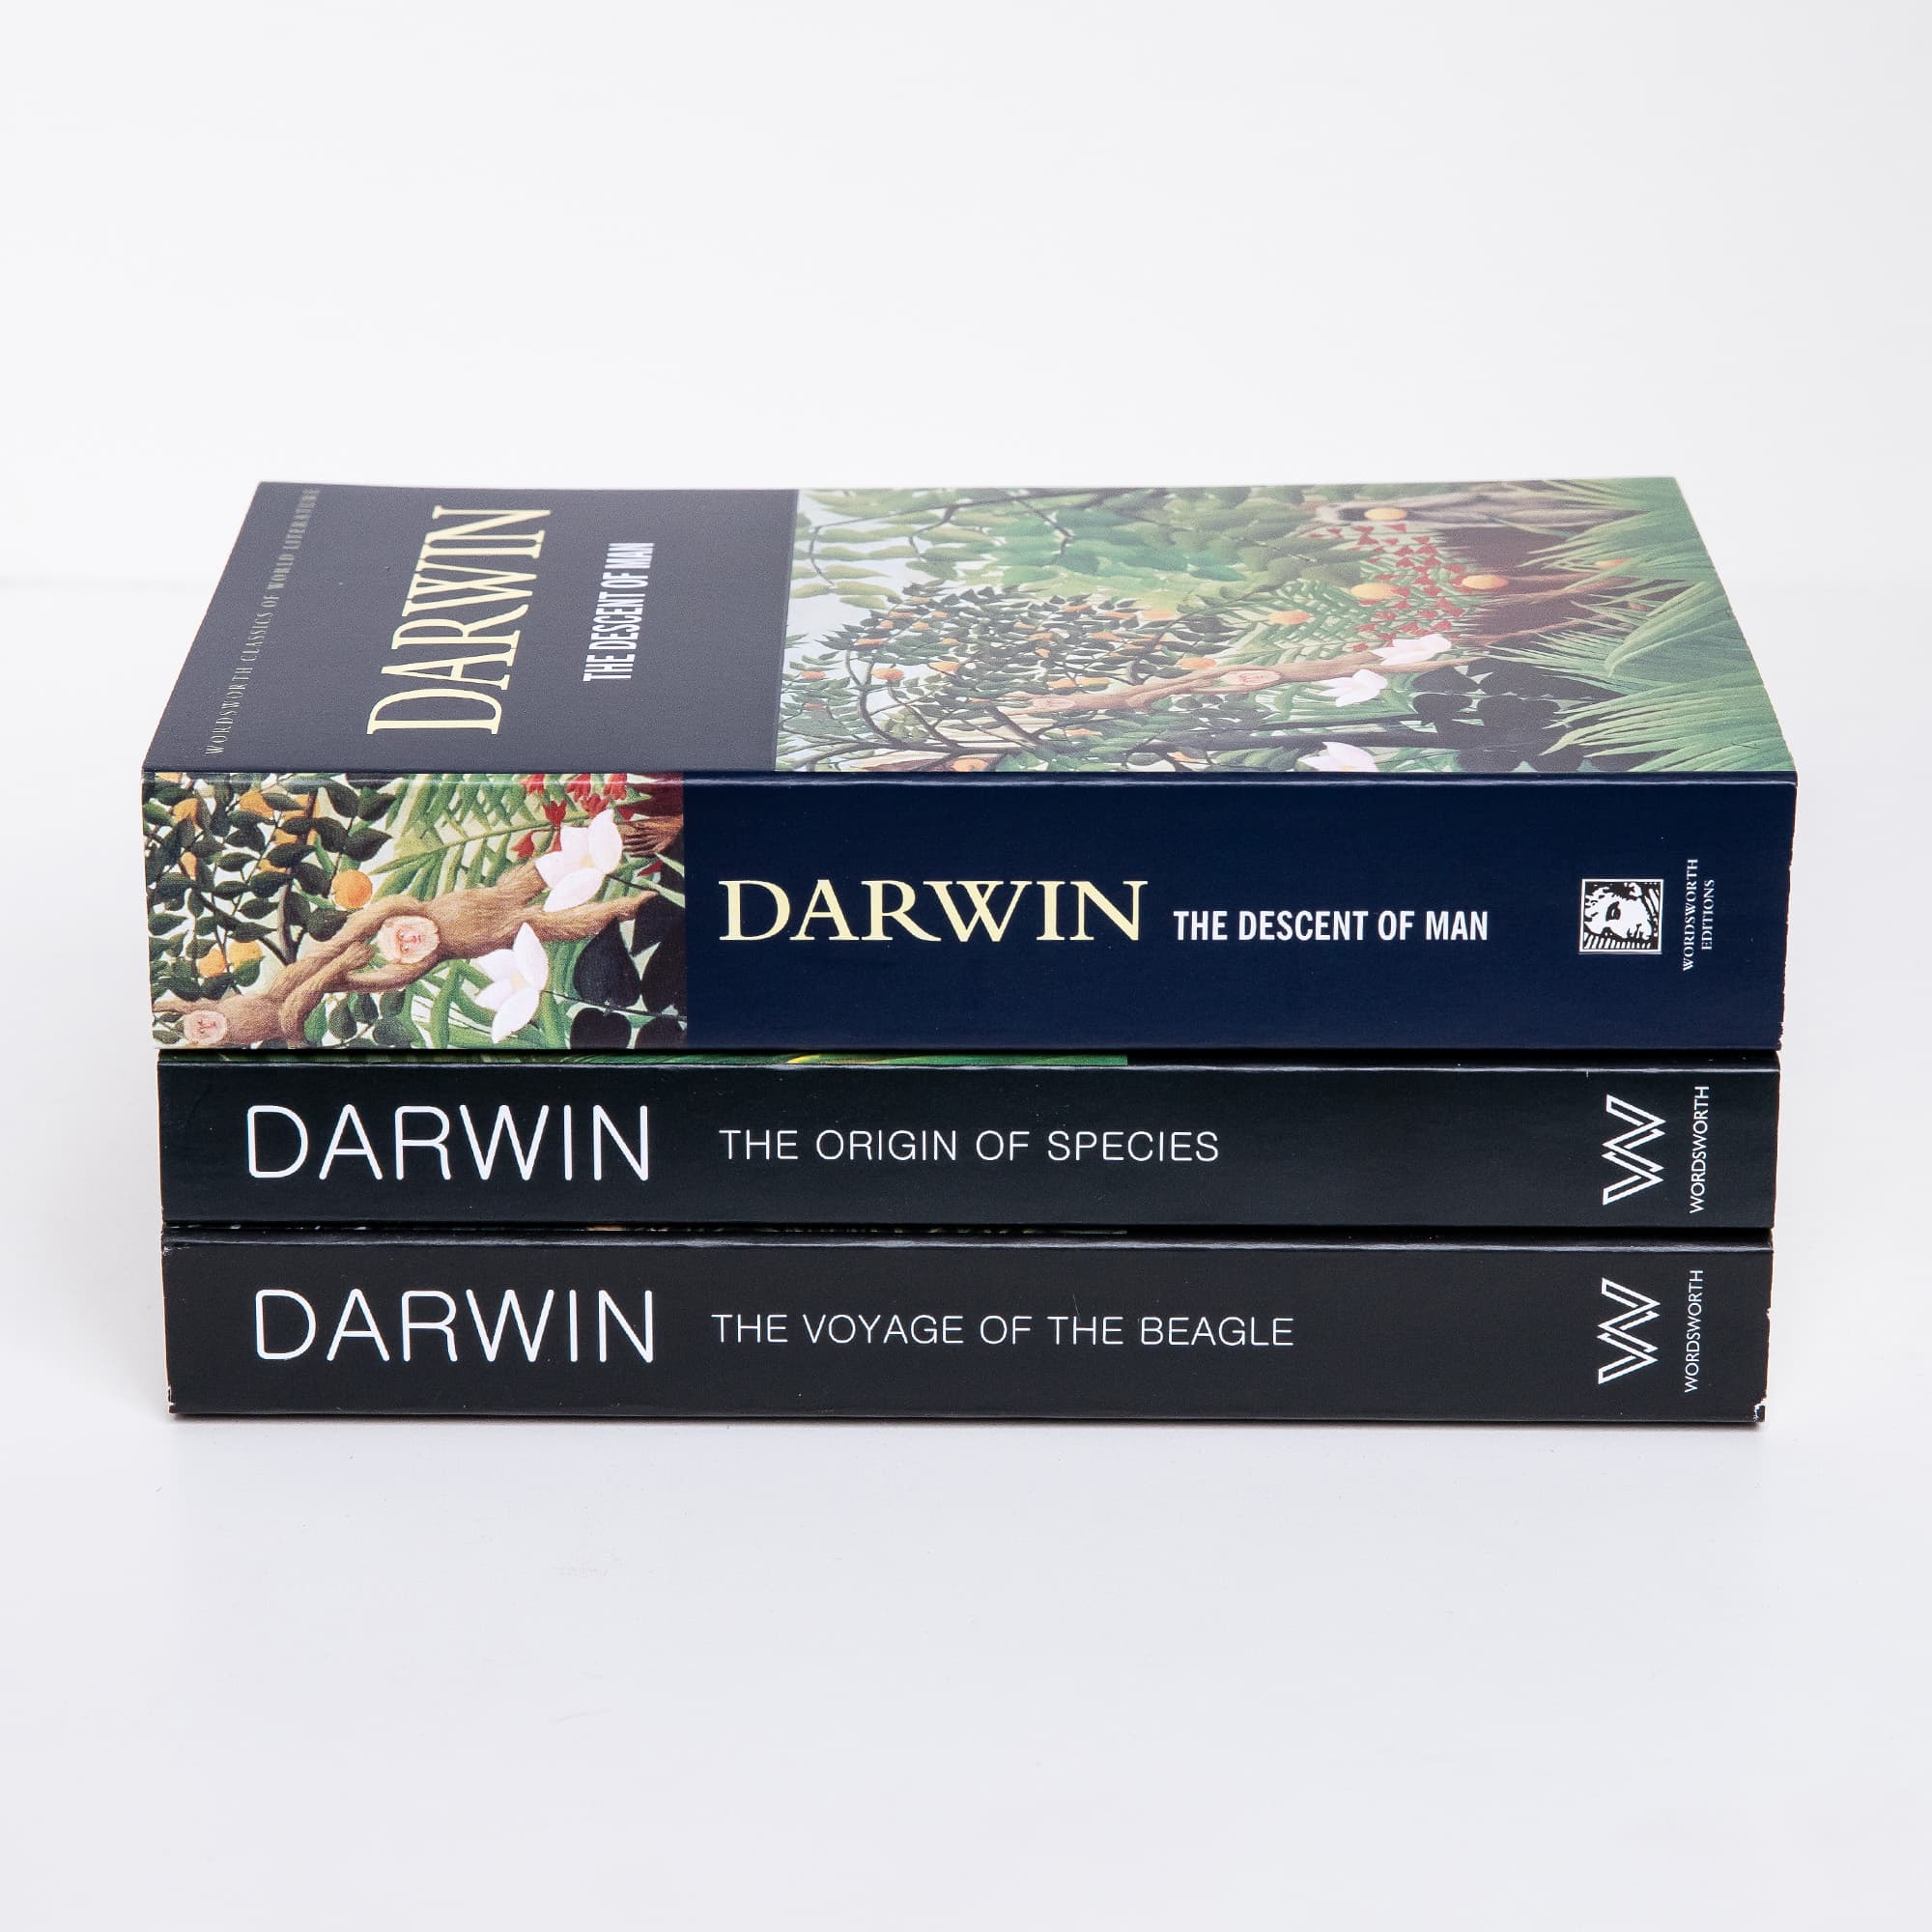 Darwin book stack